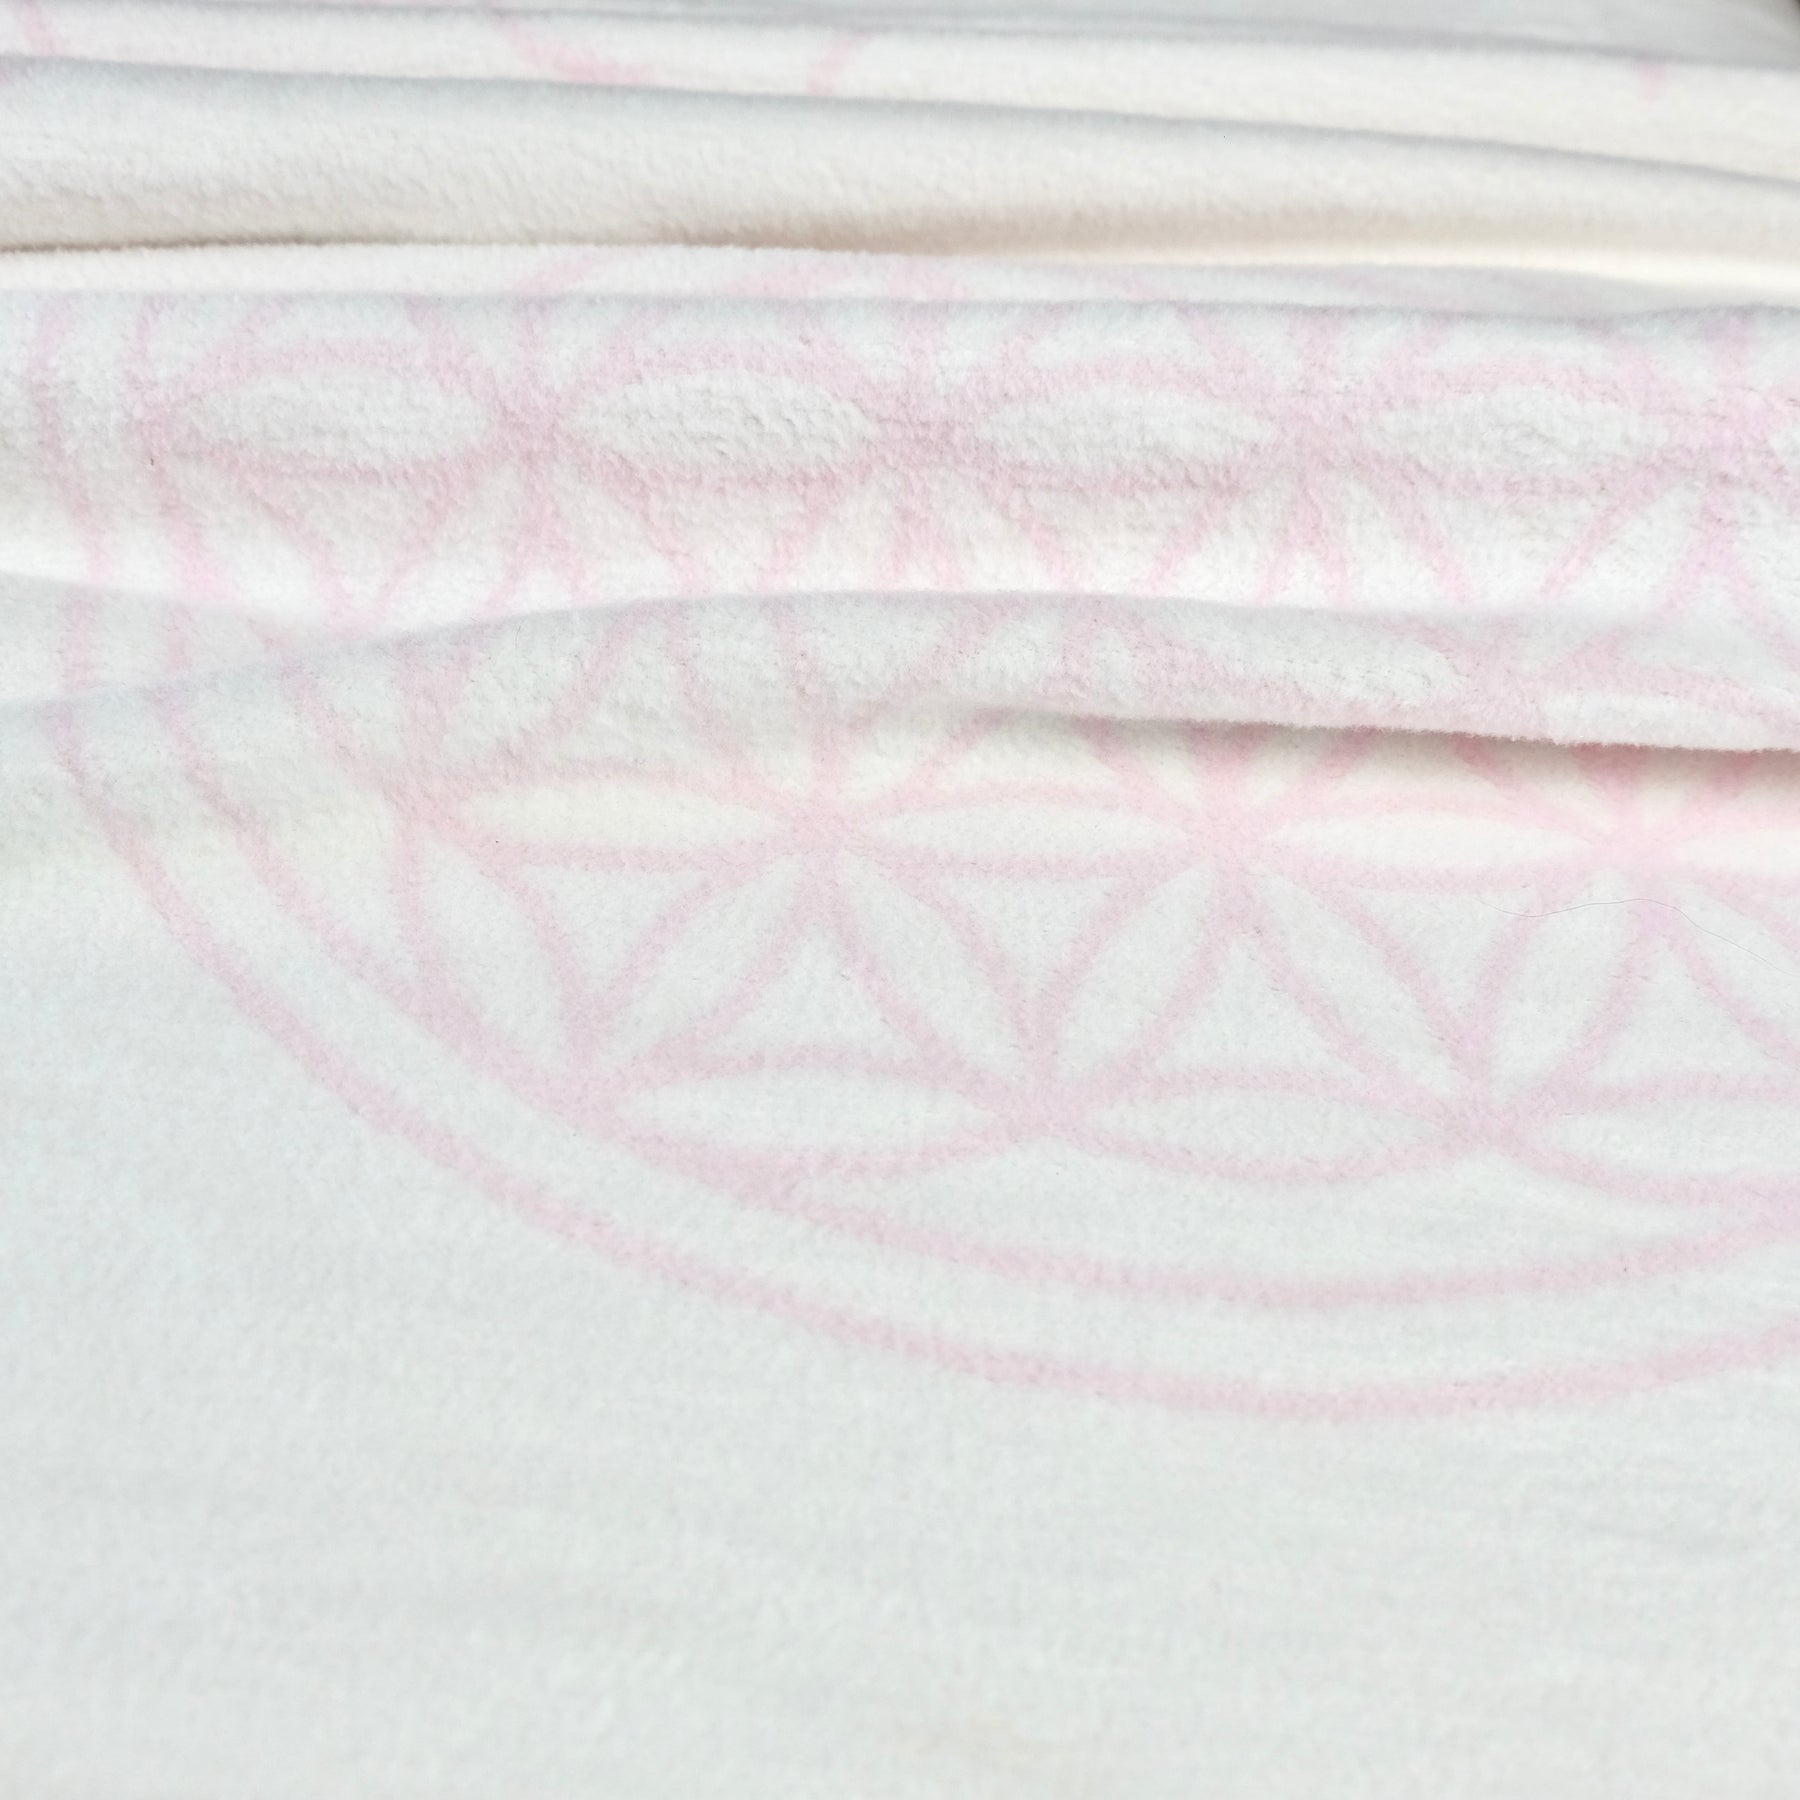 Biobaumwolldecke Achtsamkeit weiß/rosa, Größe 150 x 220 cm, 100% Biobaumwolle, gots-zertifiziert